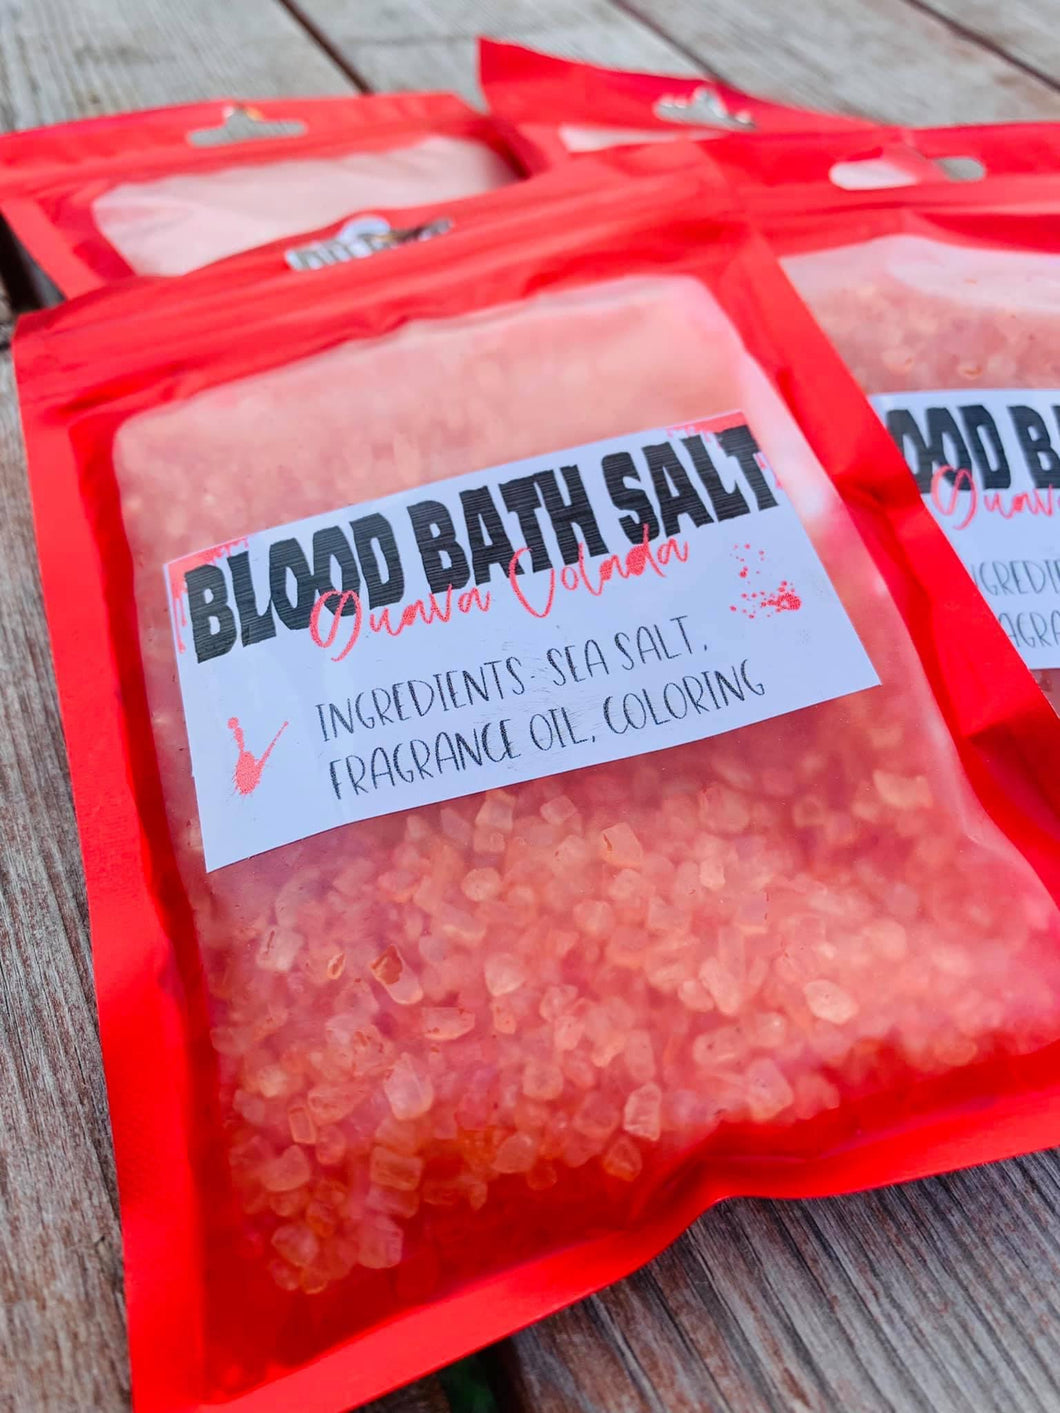 Blood Bath Salt